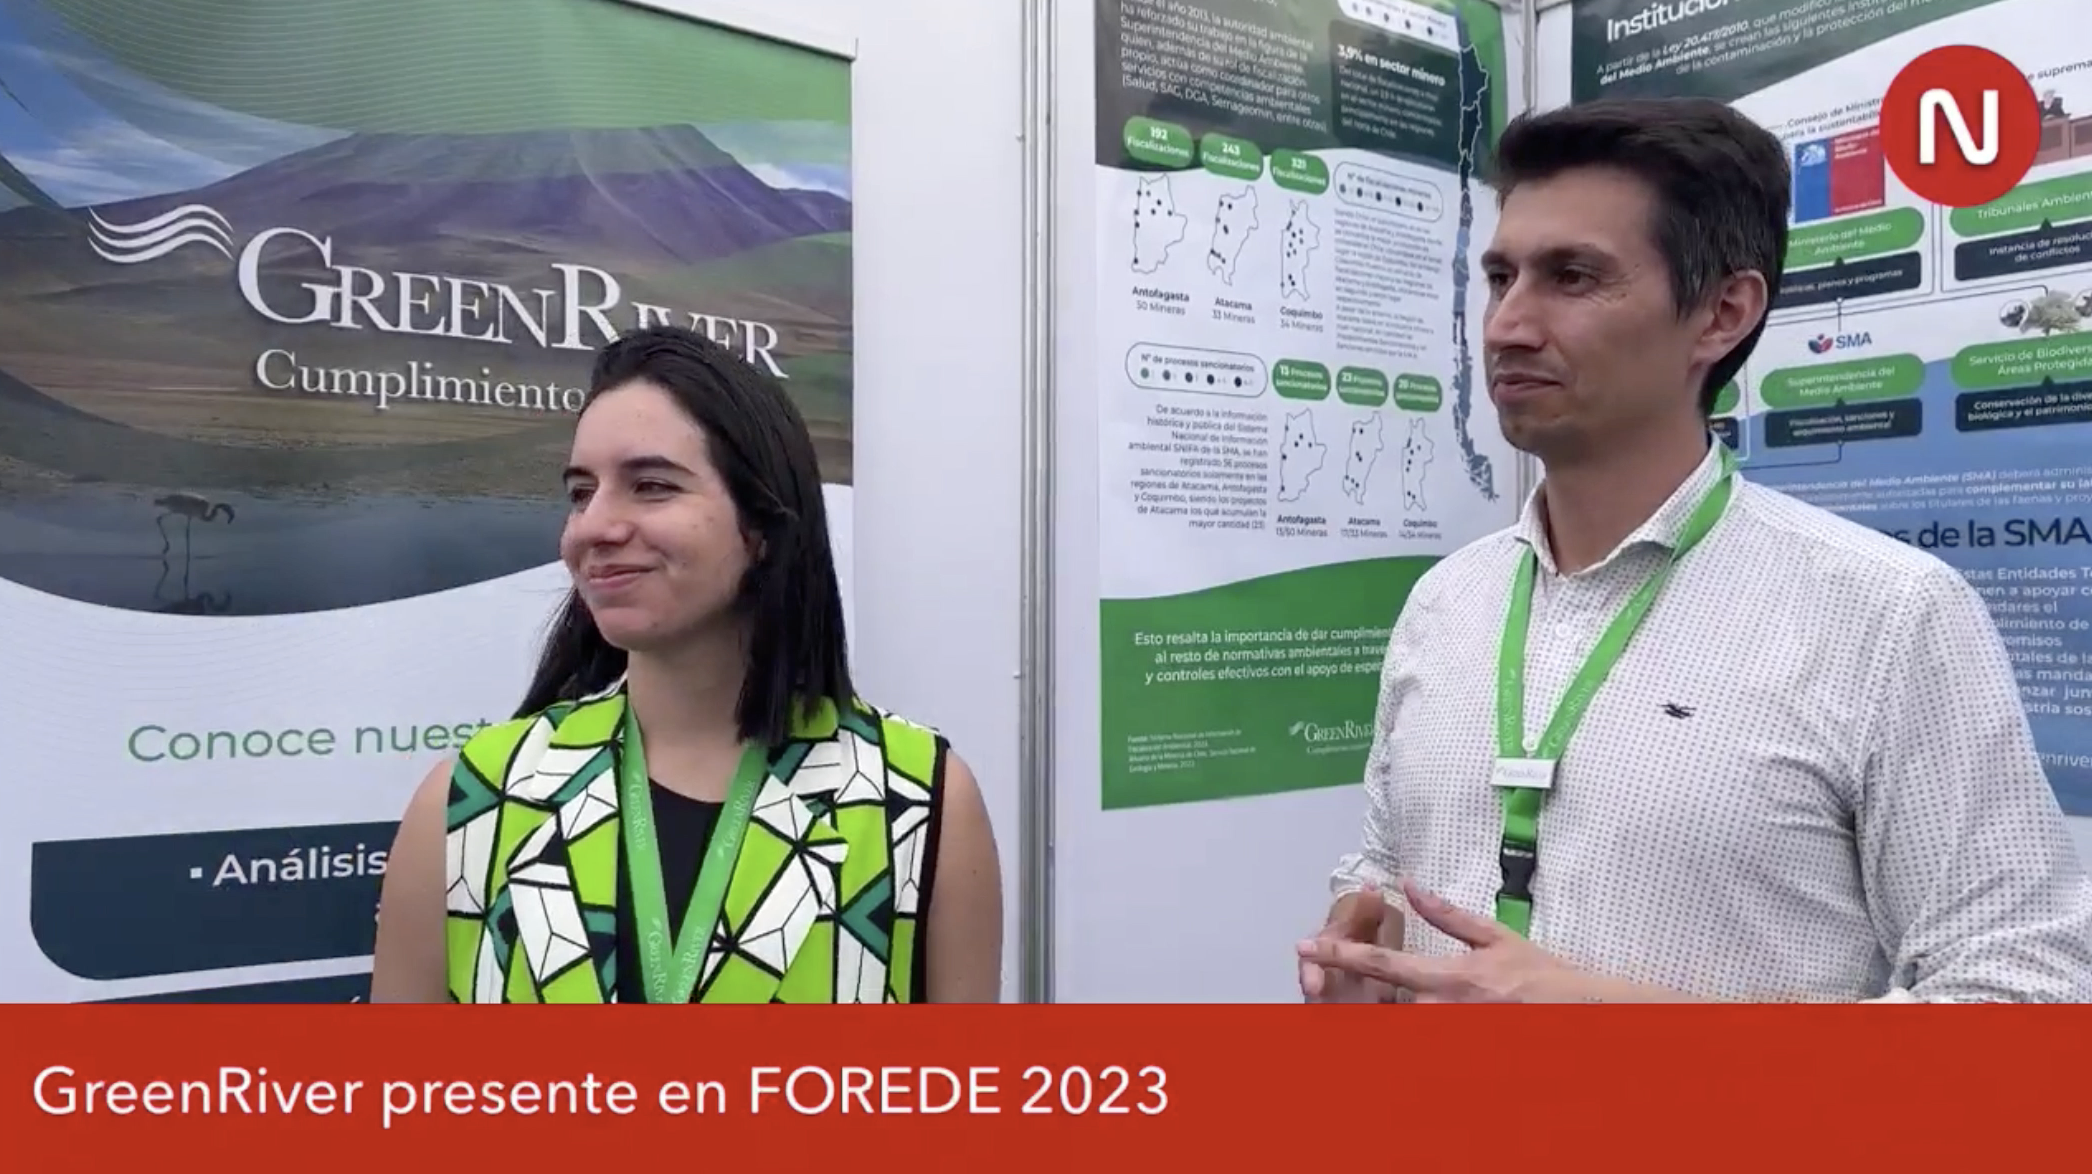 Felipe Fortt y Javiera Morales representando a GreenRiver en Forede